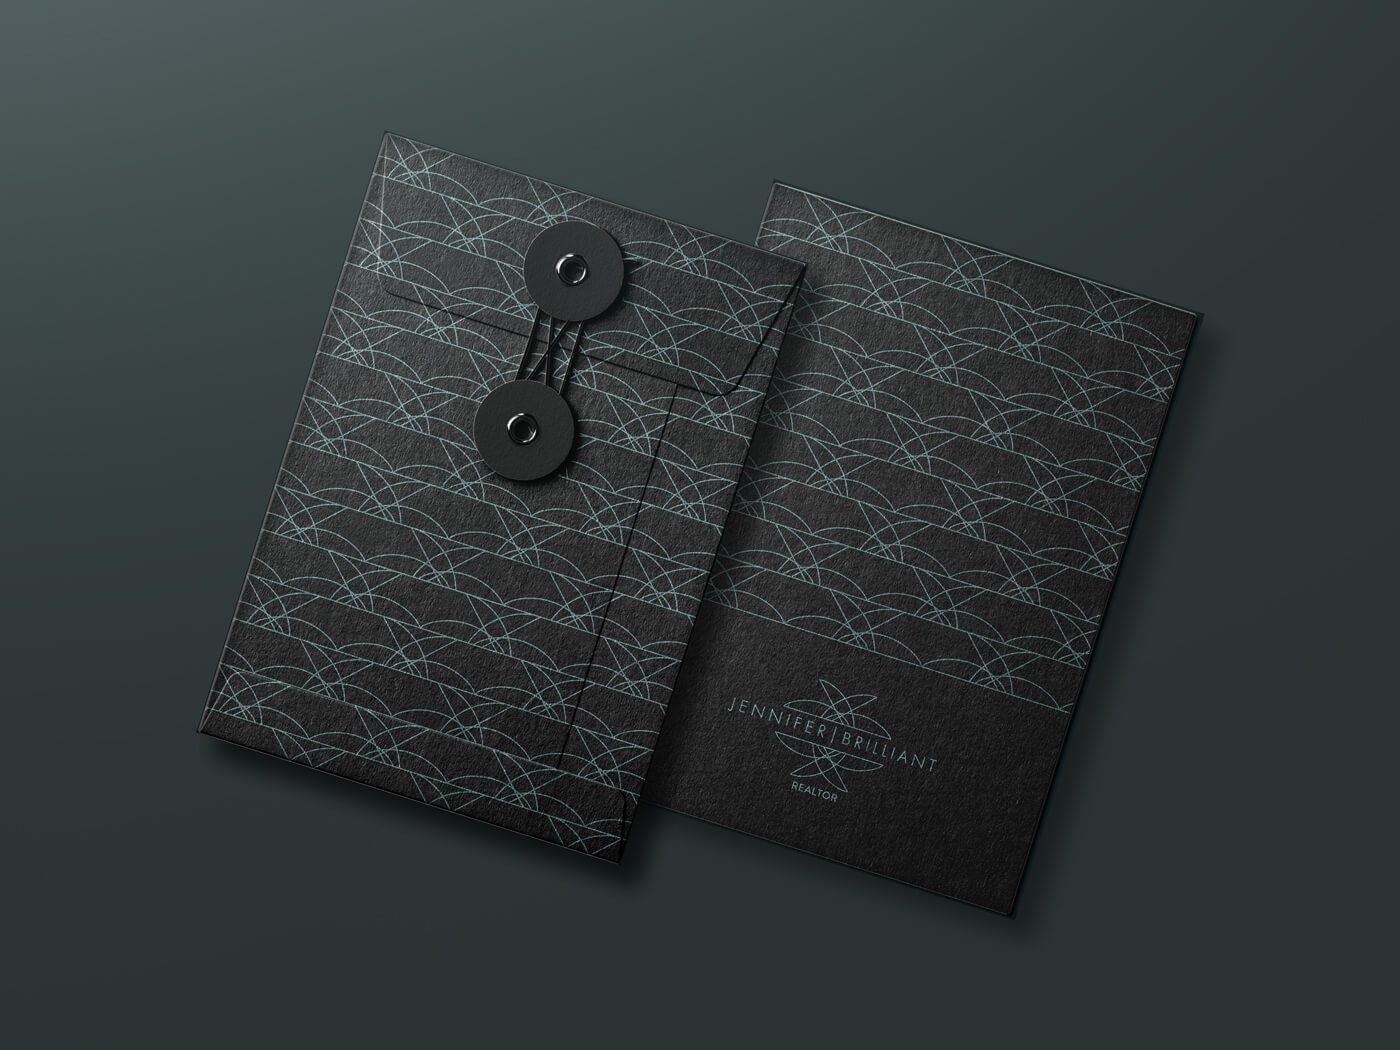 Jacober Creative envelope design for Realtor Jennifer Brilliant. Black folder with pattern and logo